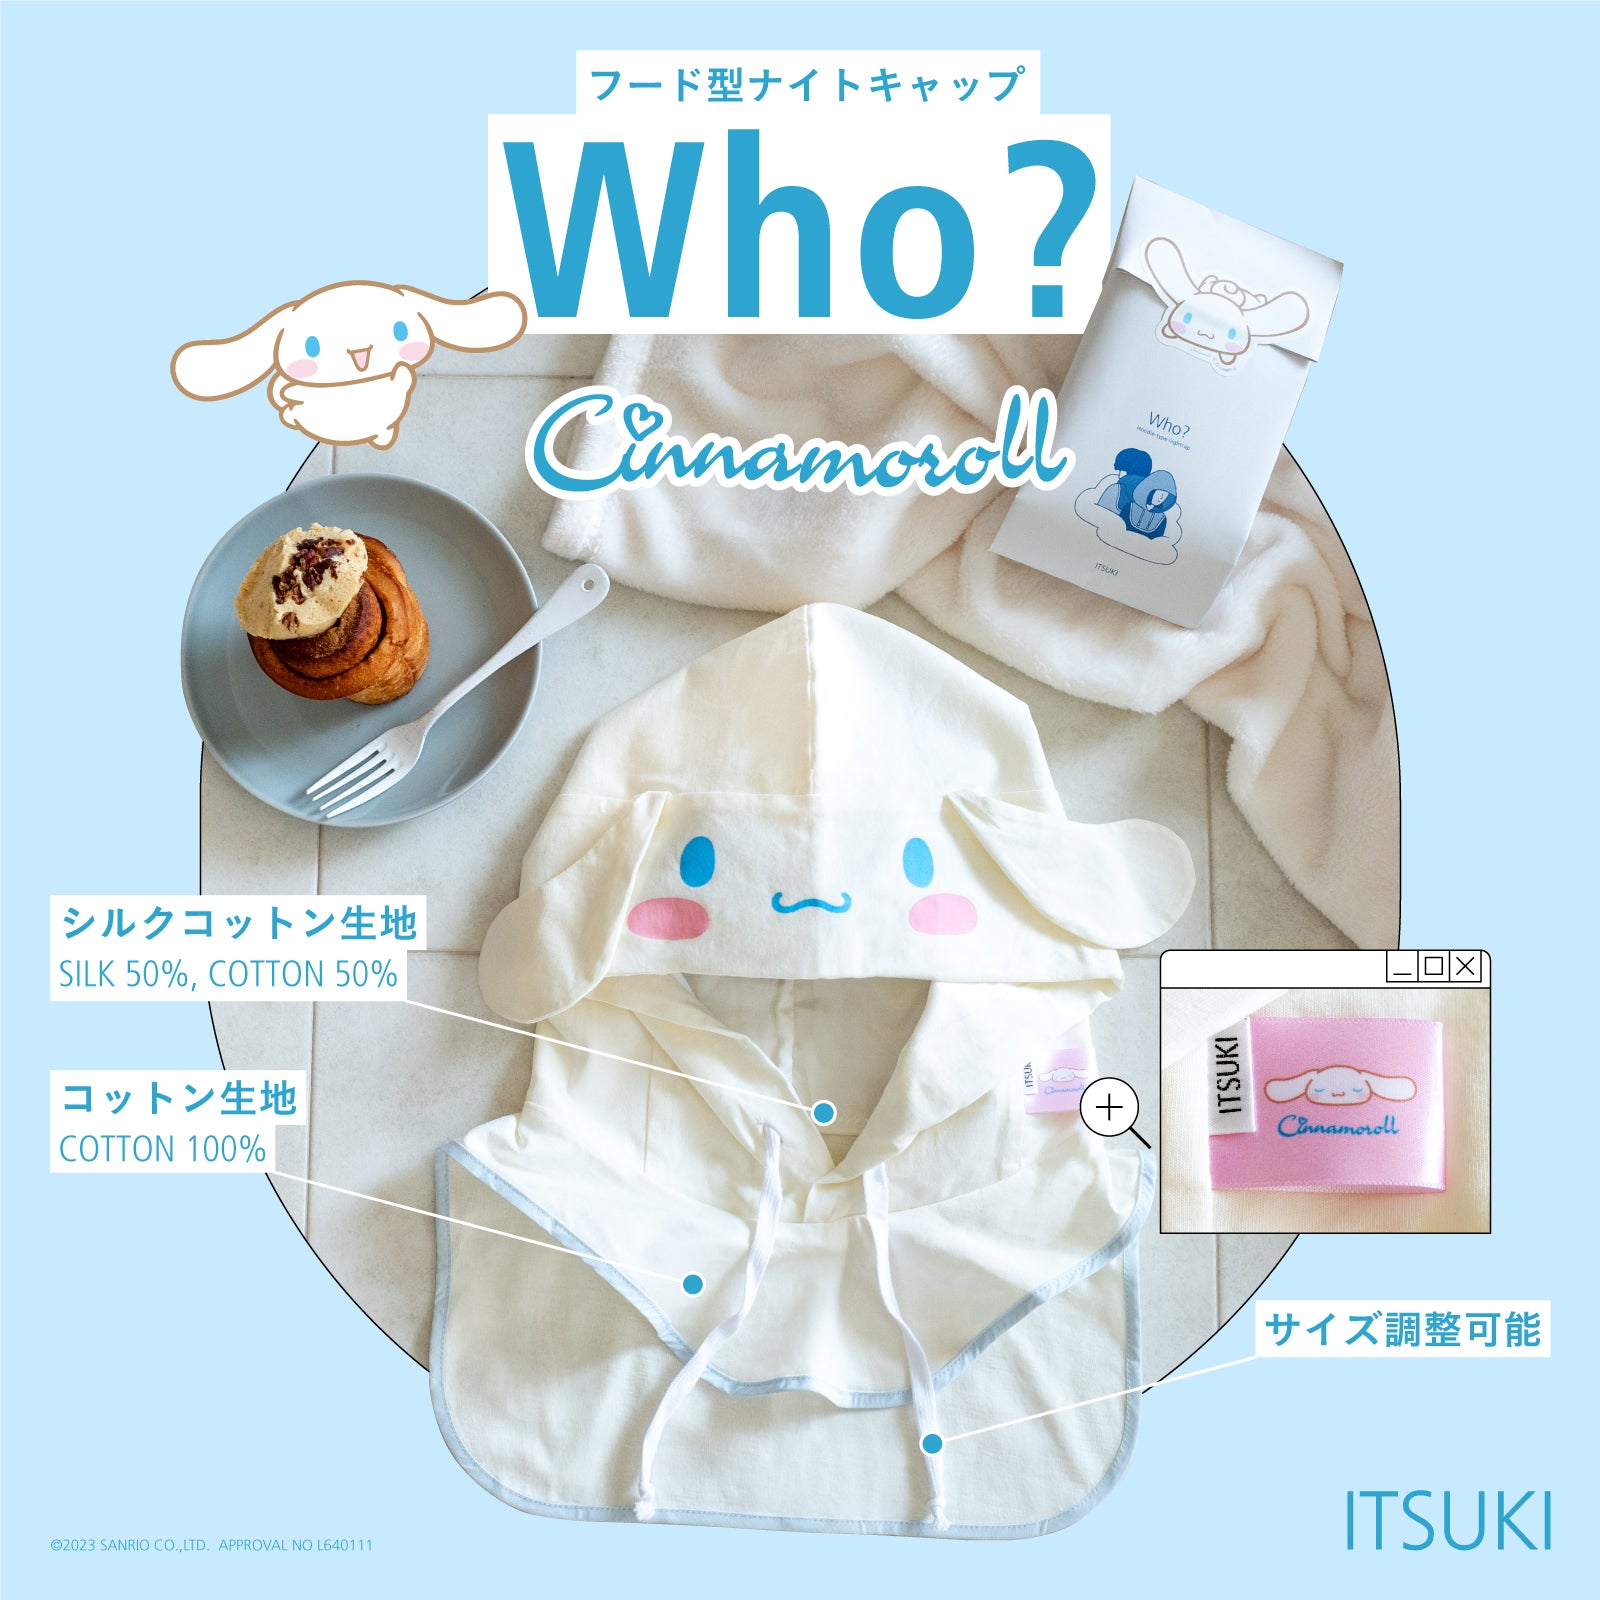 Who? [フー]：シナモロール – itsuki-store